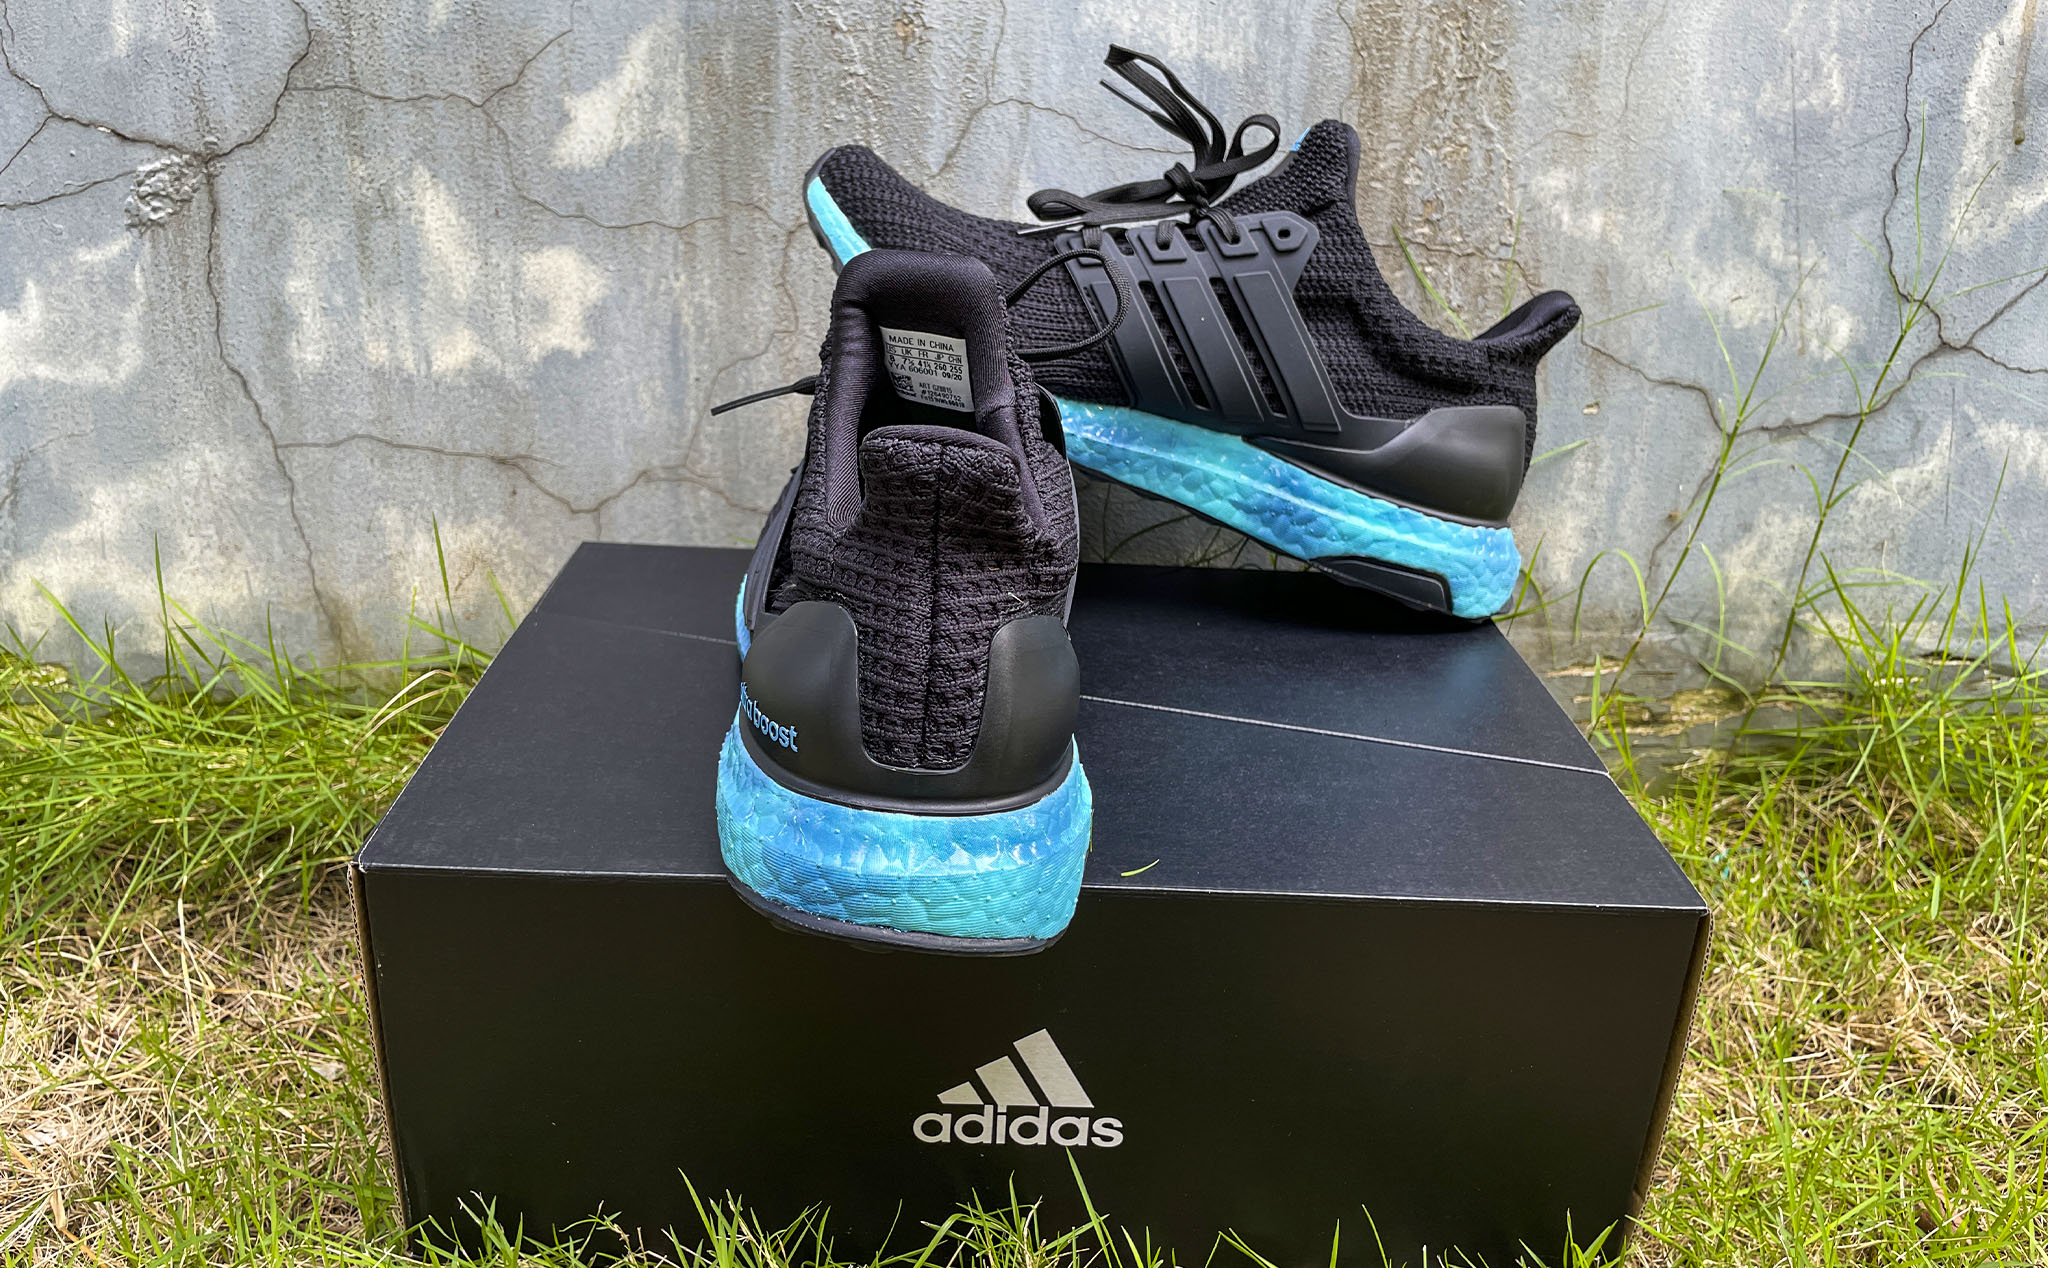 Mở hộp và Đánh giá nhanh adidas Ultraboost DNA 4.0 đế màu xanh